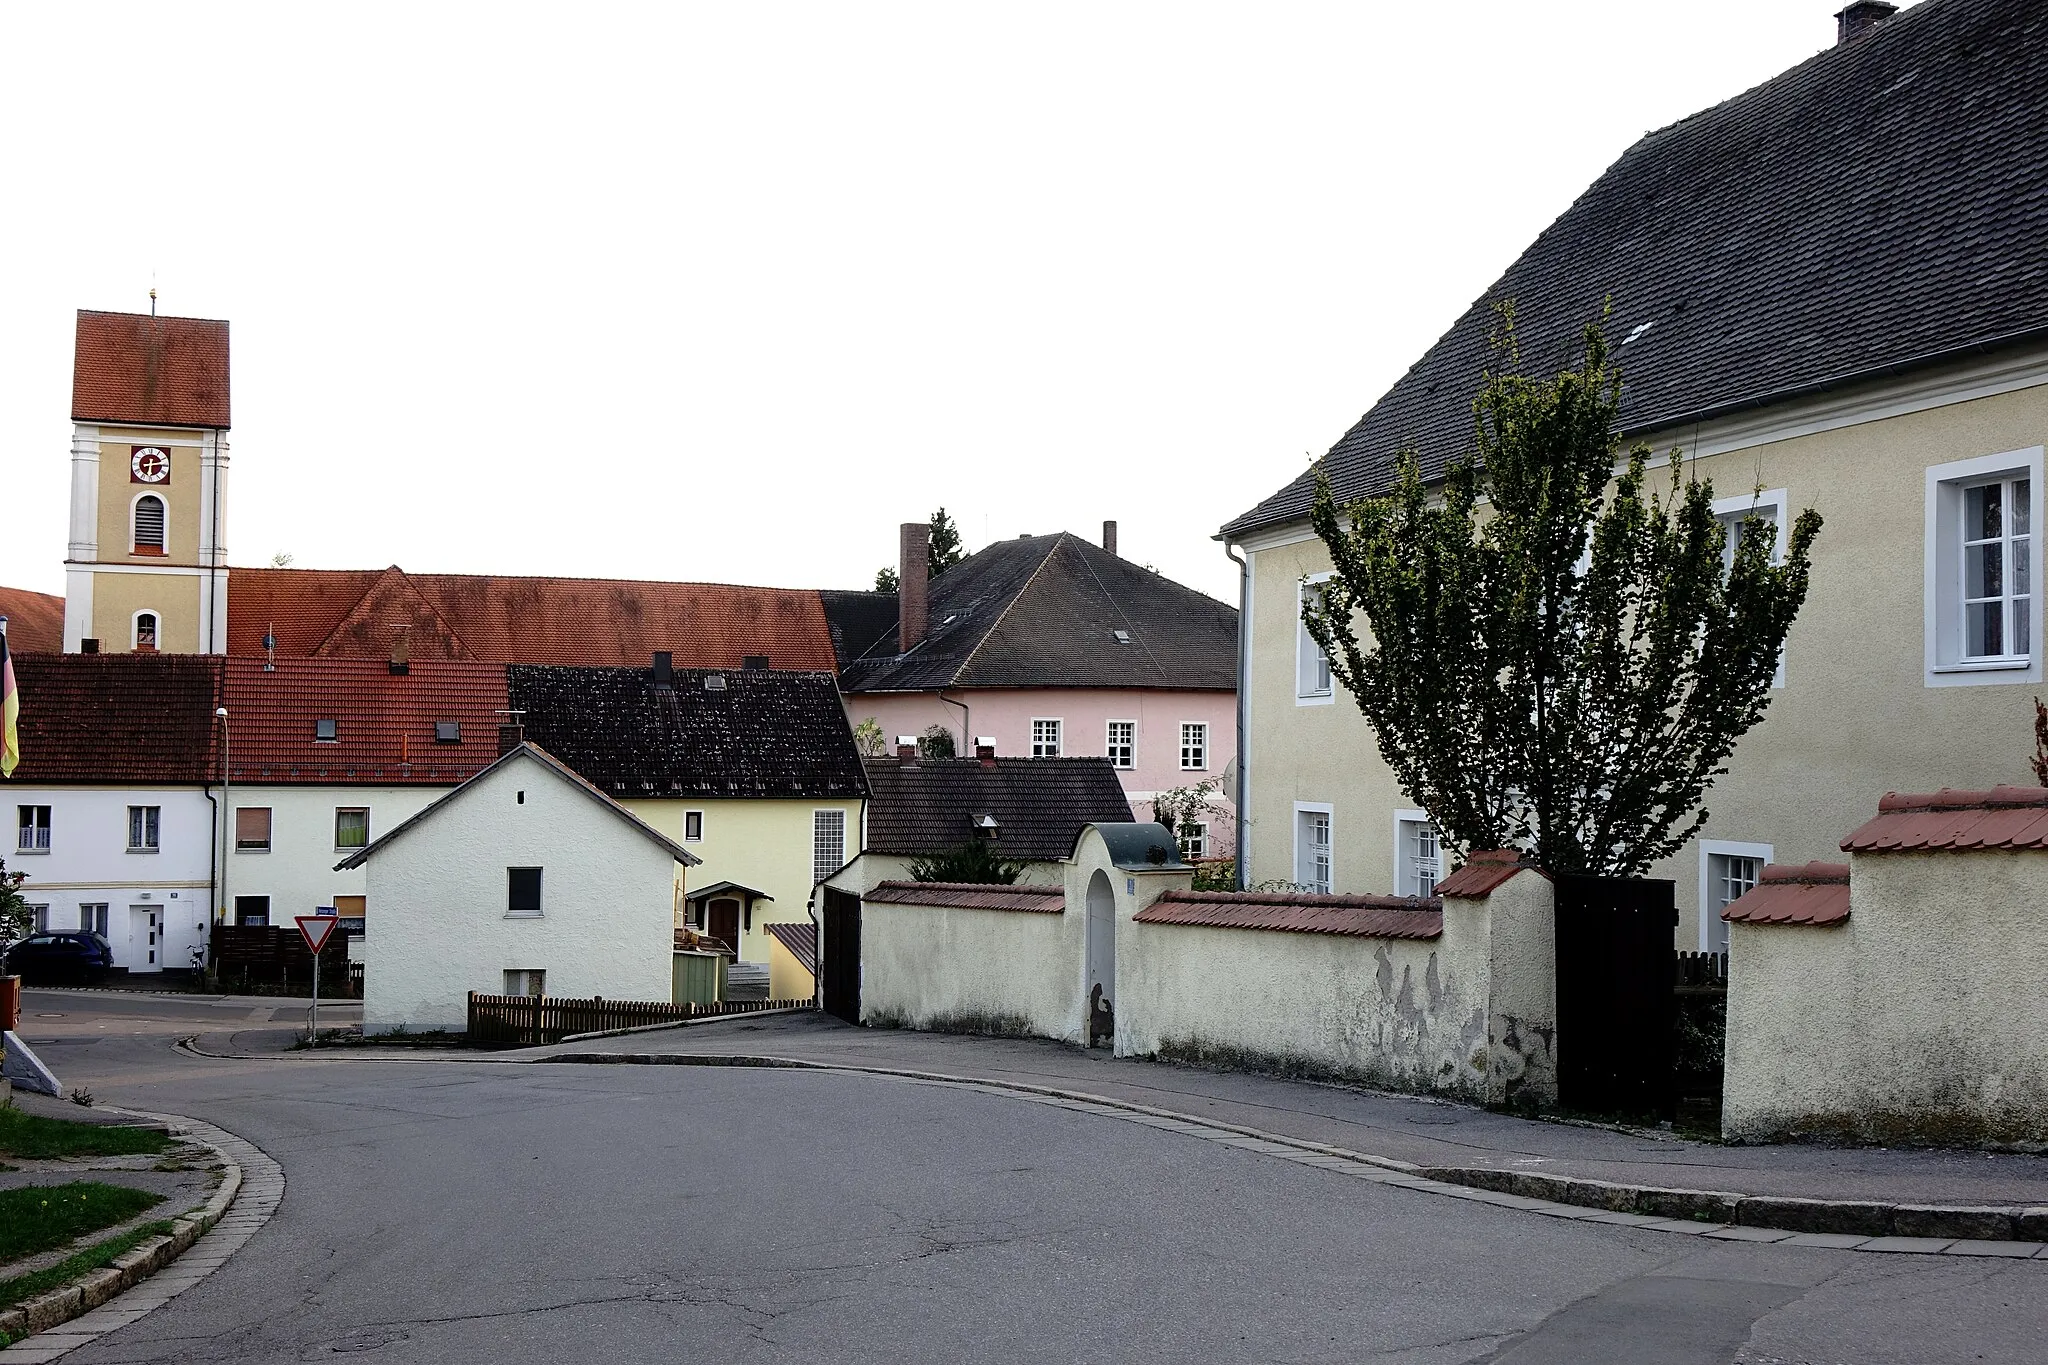 Photo showing: Rechts der alte Pfarrhof, links Kirche St. Jacobus, rechts davon ein Teil des Schlosses